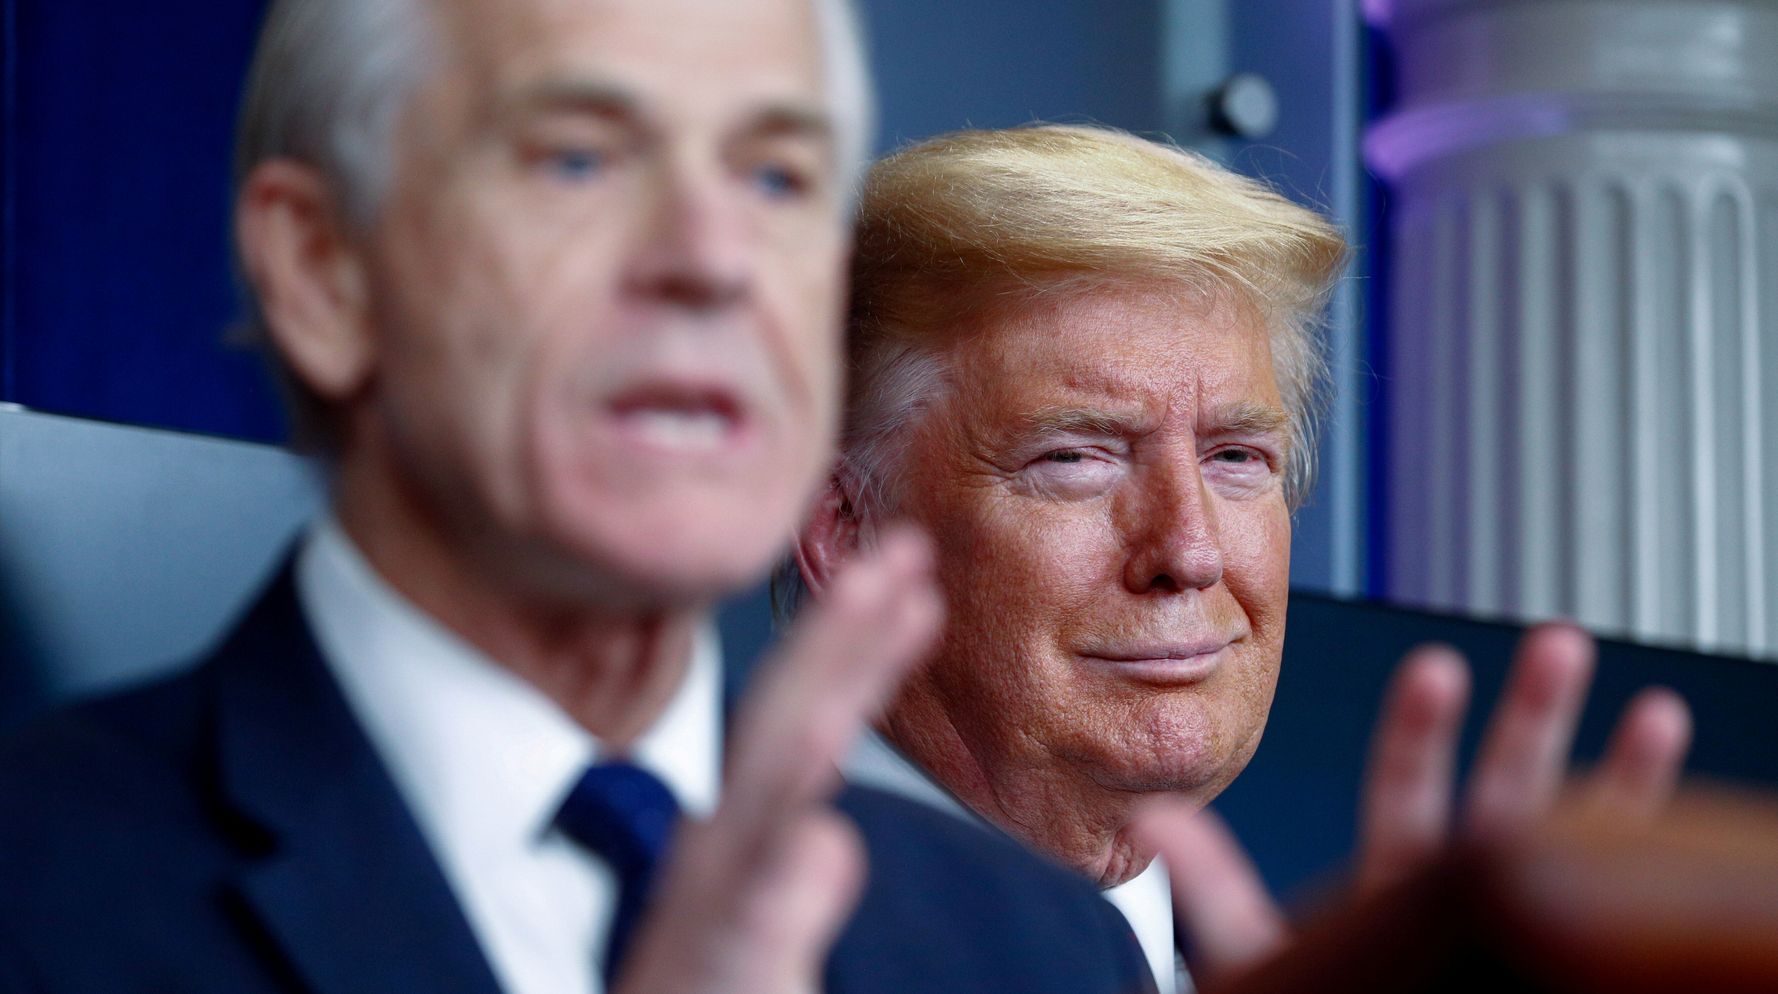 Trump Trade Adviser Violated Hatch Act With Biden Attacks, Watchdog Says